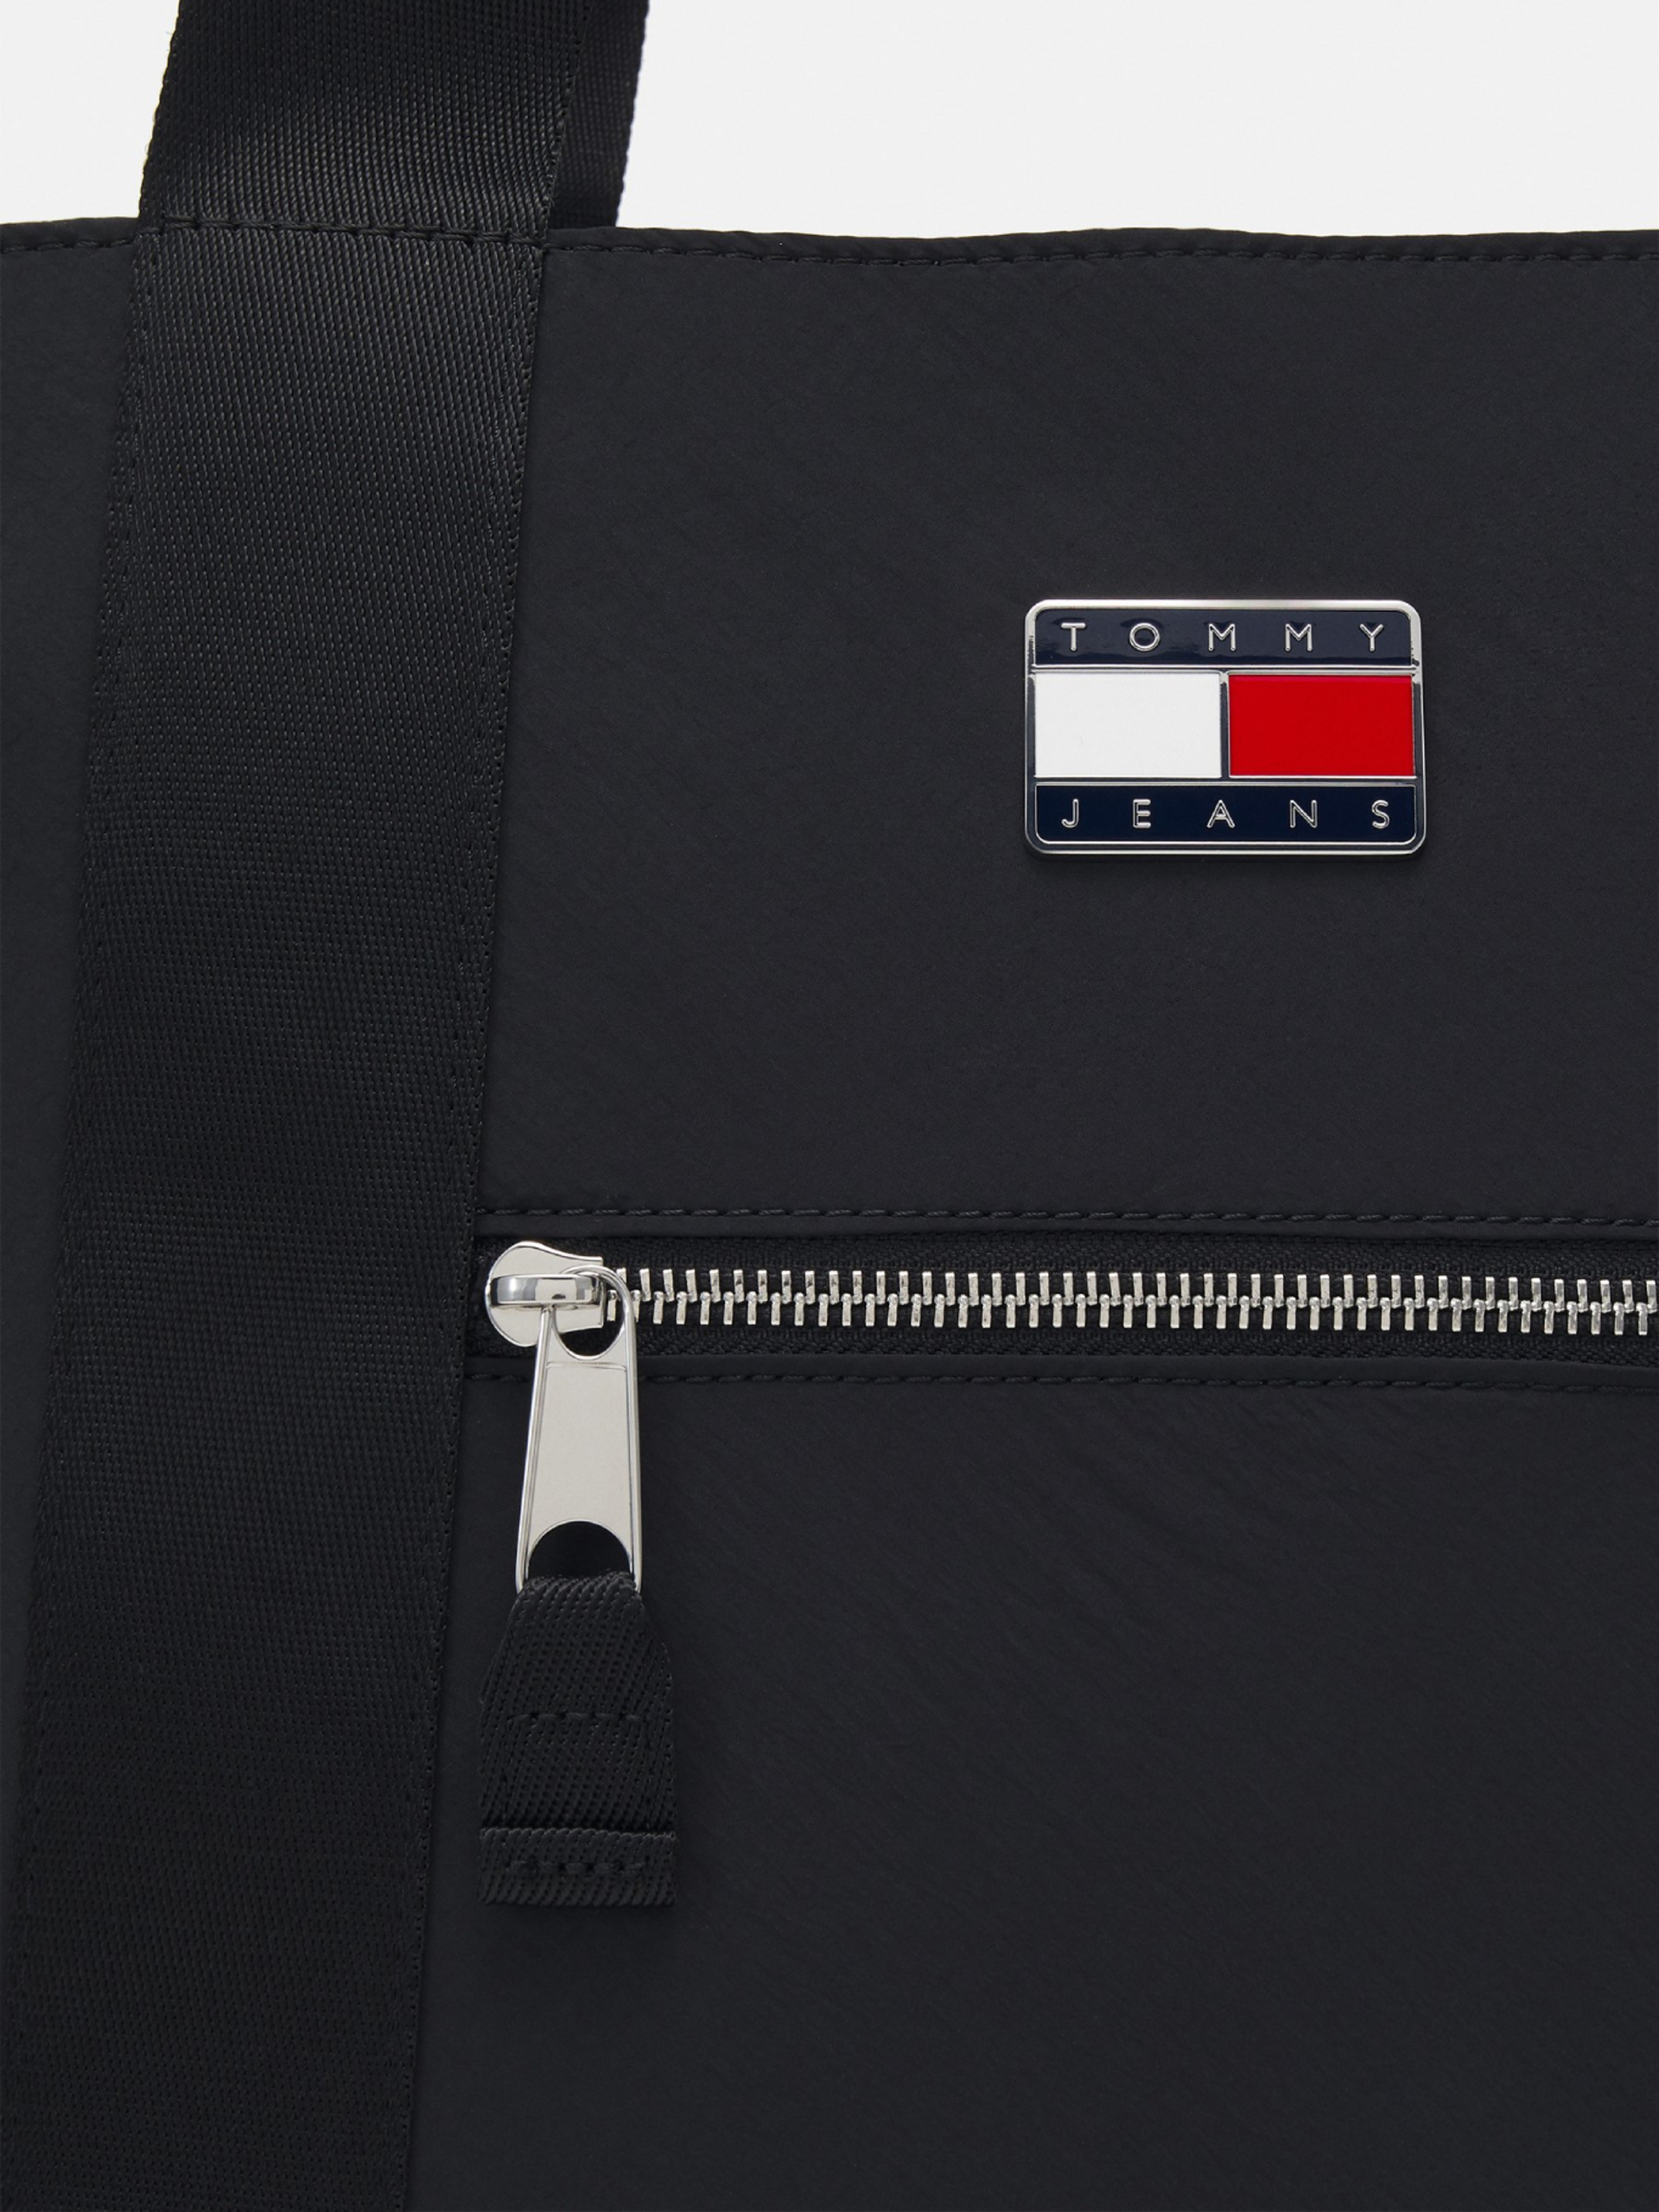 Tommy Jeans dámská černá kabelka - OS (BDS)